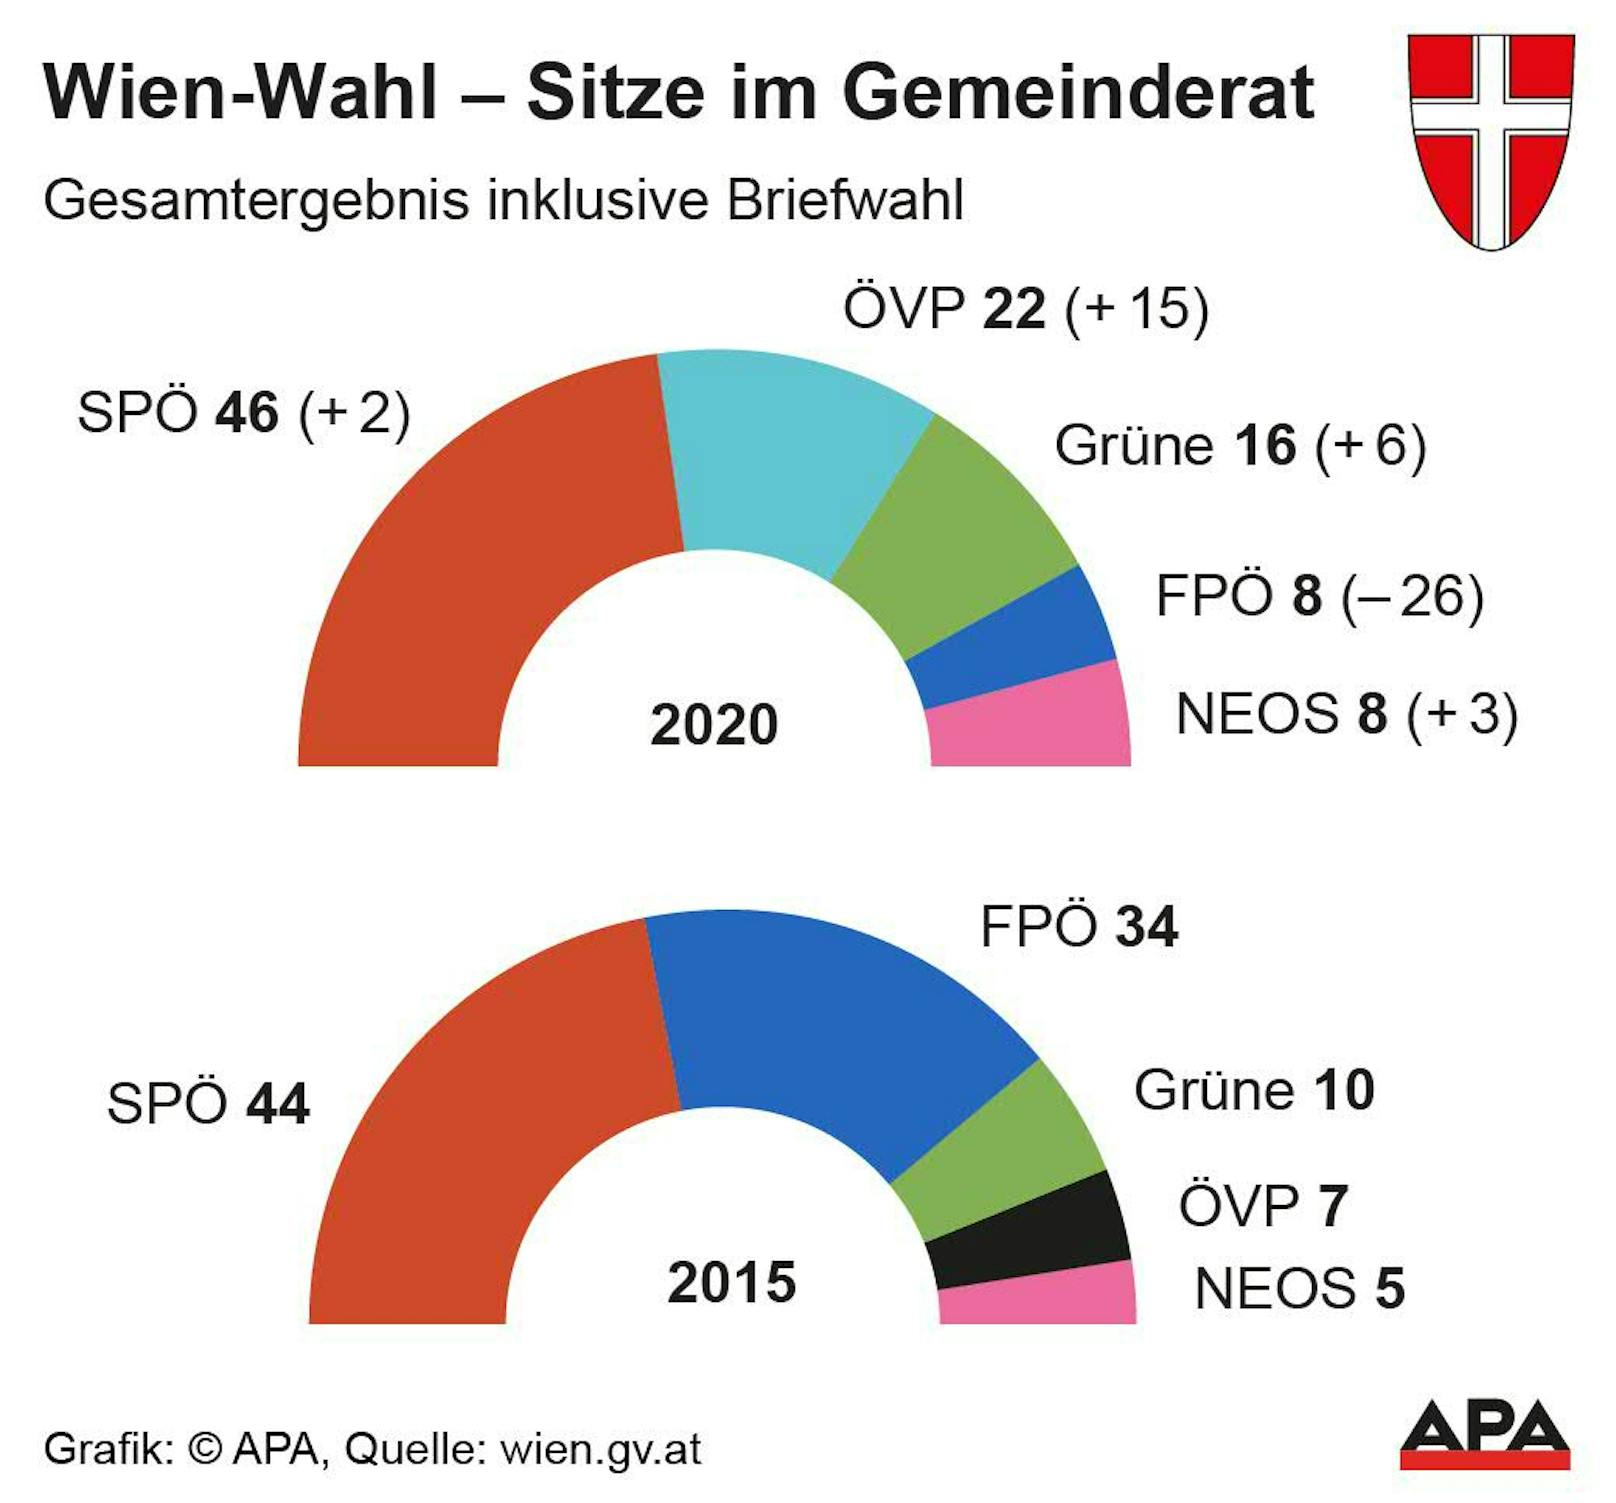 Mandatsverteilung im Gemeinderat nach der Wien-Wahl 2020